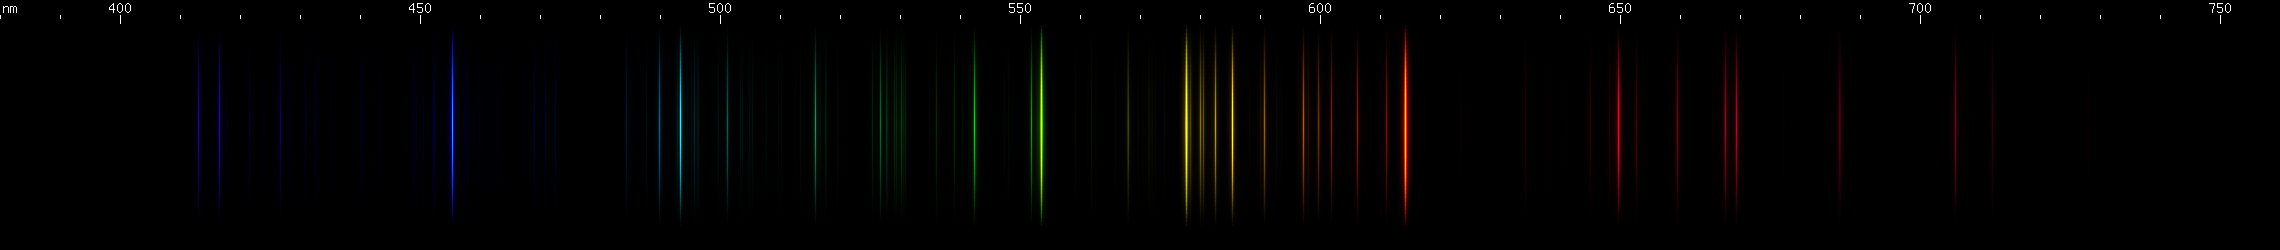 Spectral lines of Barium.